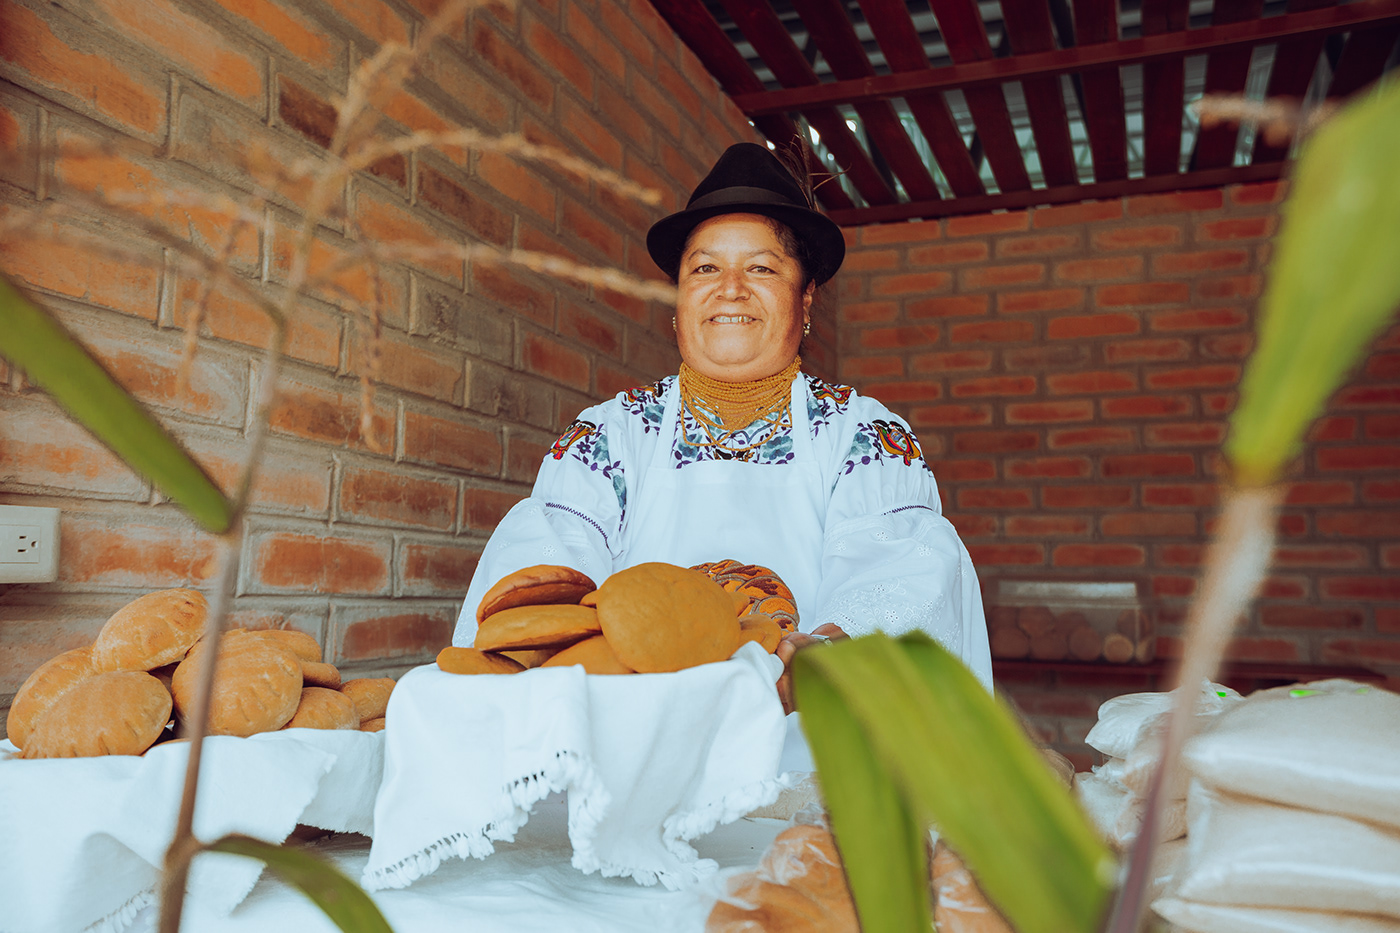 15 DE OCTUBRE amazónico cuenca Ecuador guayaquil Mujeres mujeres rurales quito